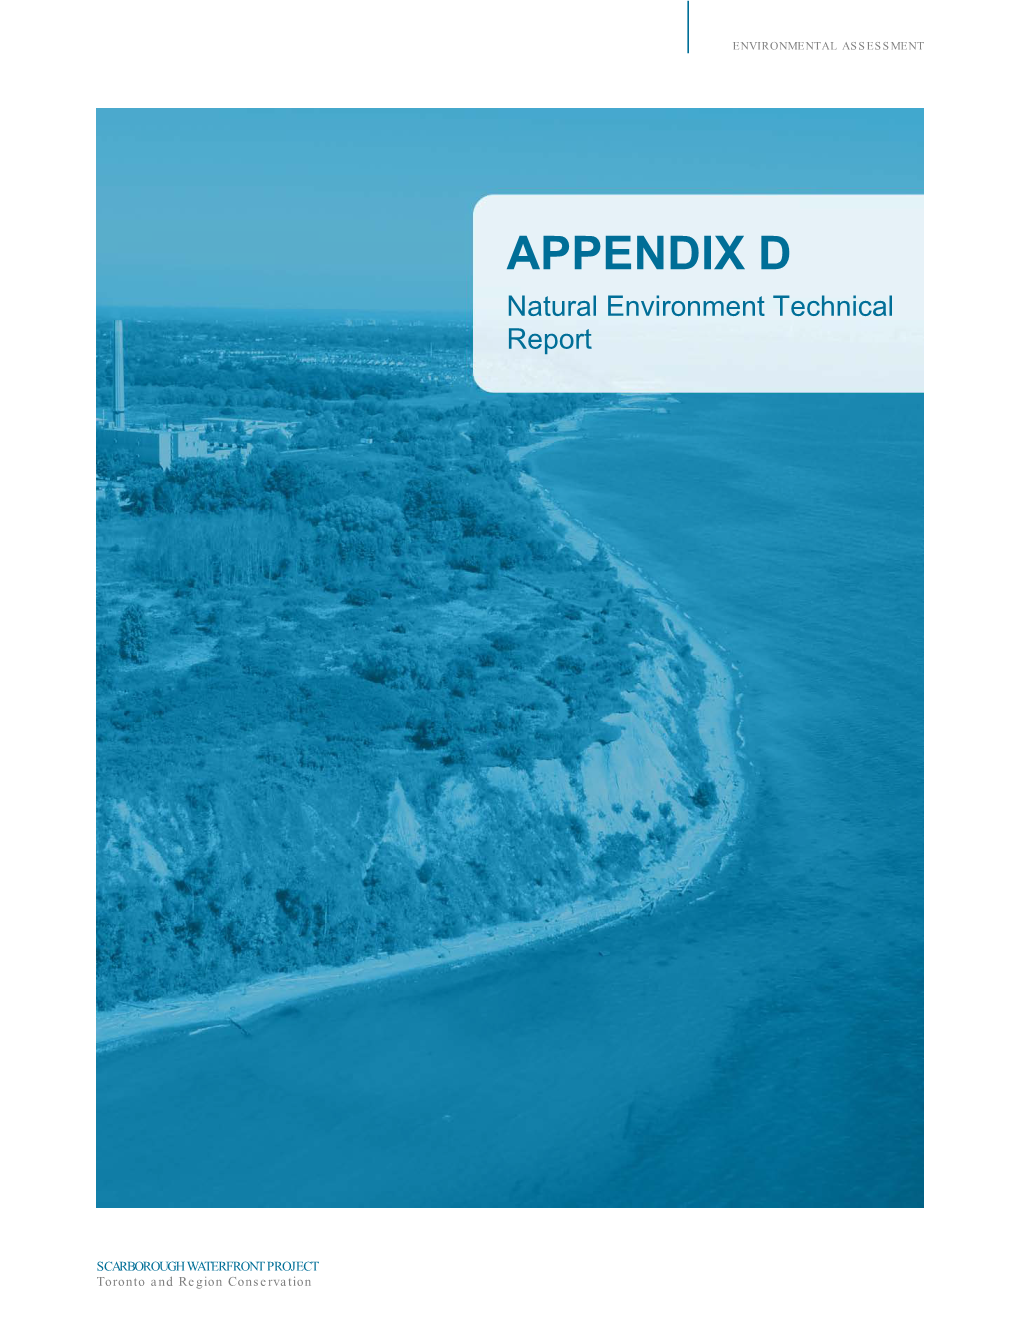 APPENDIX D Natural Environment Technical Report